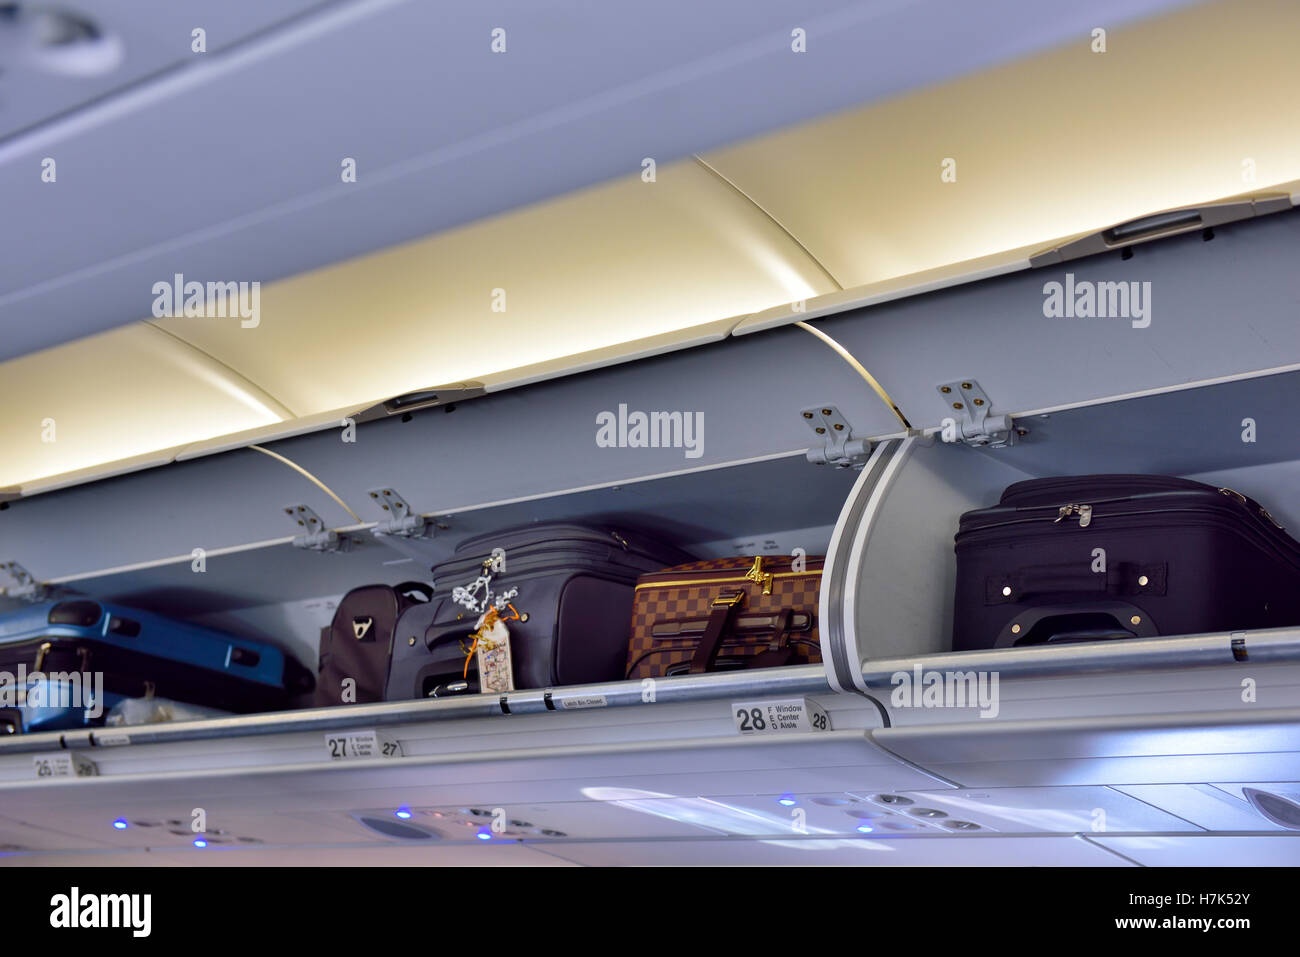 Dans le compartiment au-dessus de l'avion de passagers avec bagages à main Banque D'Images